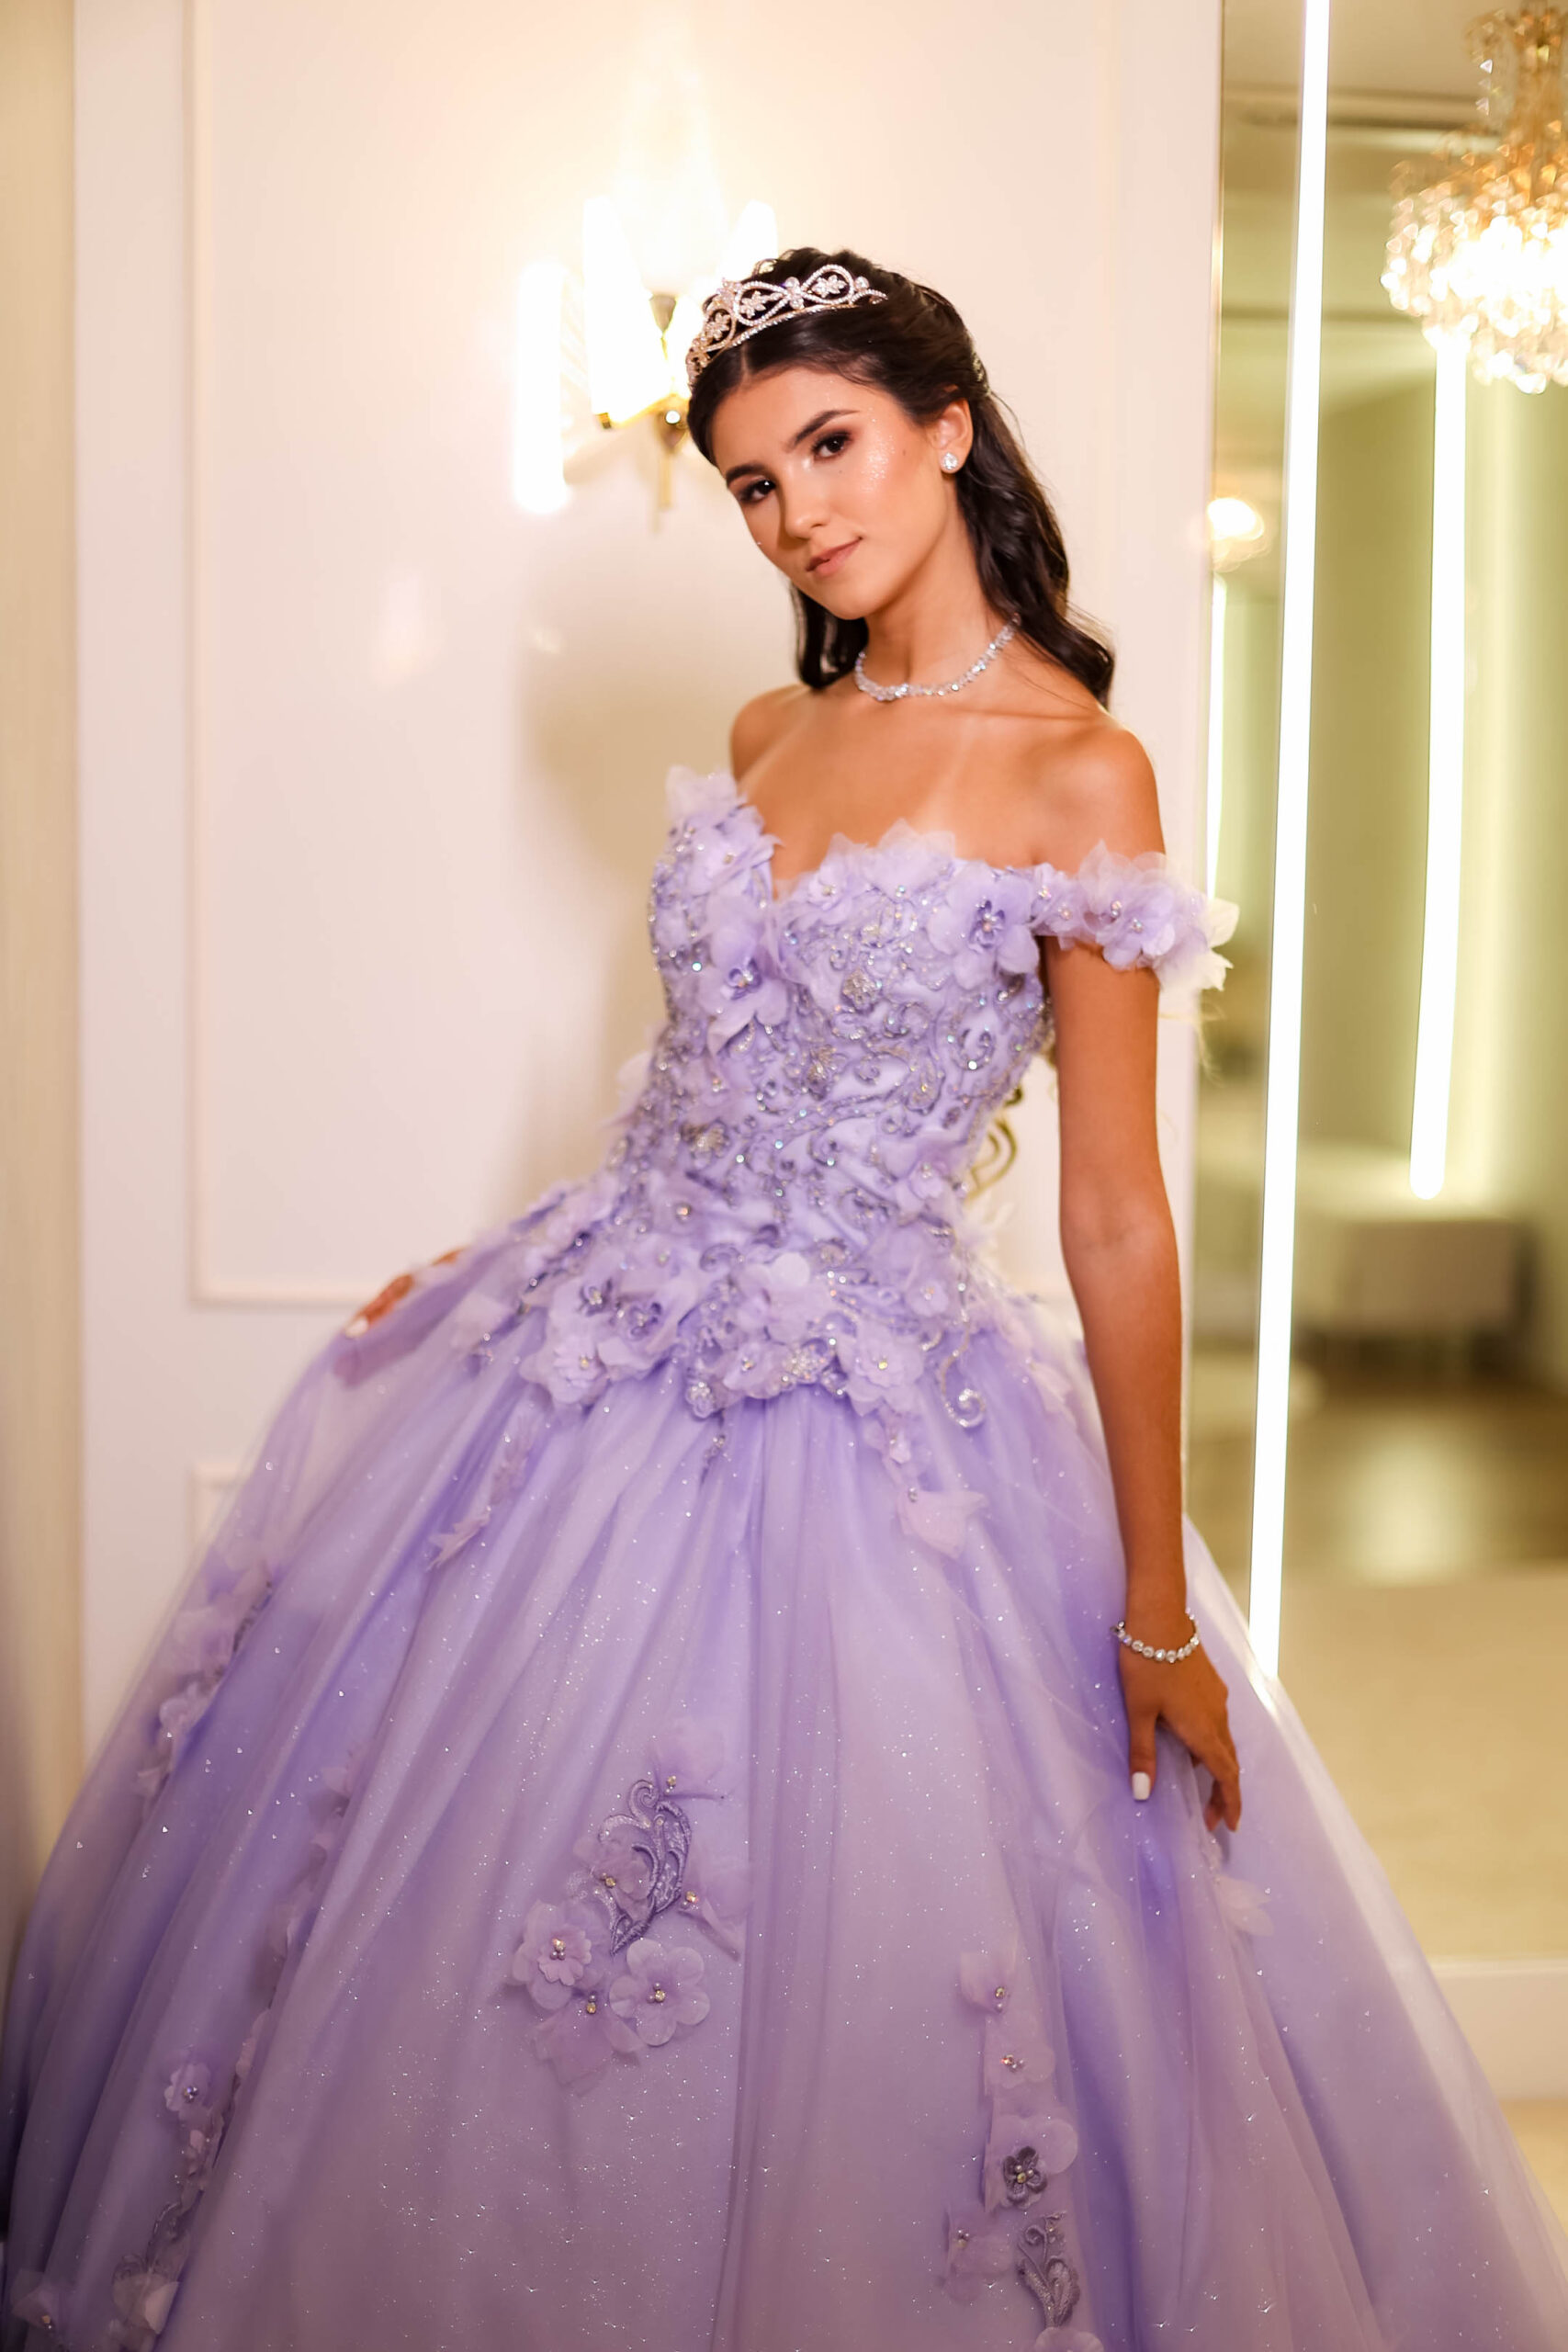 Cinderelas – Aluguel de vestidos de debutantes, noivas e festas.